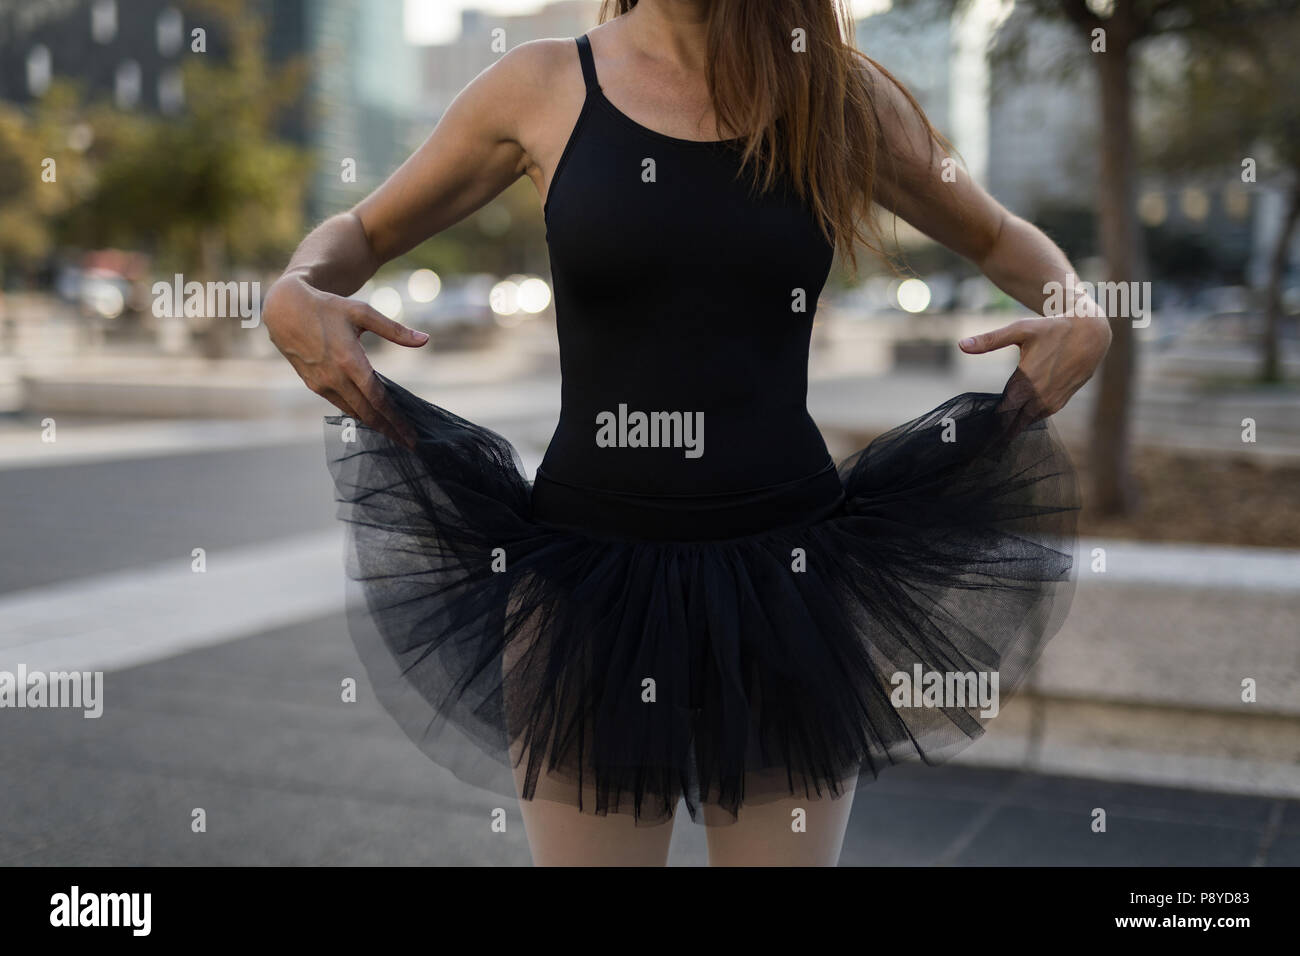 Woman performing ballet dans la ville Banque D'Images